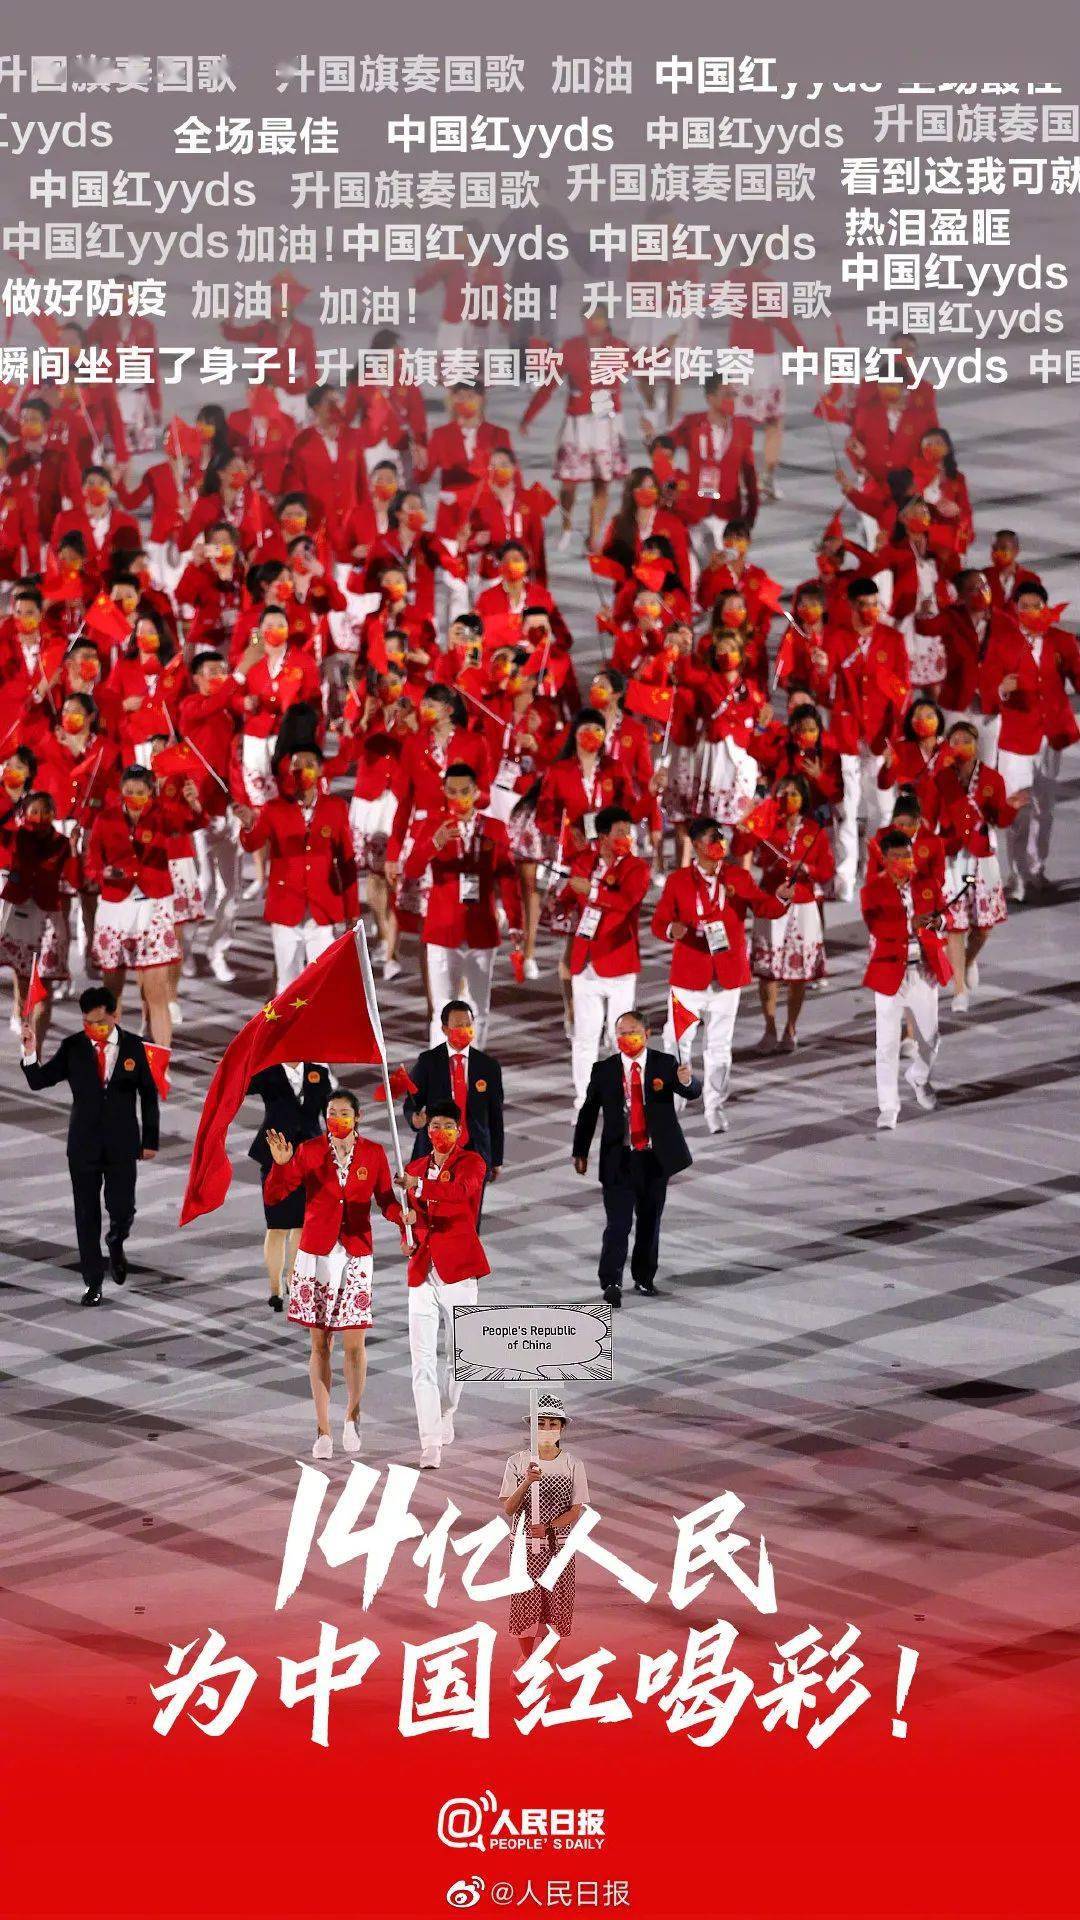 中国队yyds!不能亲临东京奥运现场,可以在此感受奥运文化